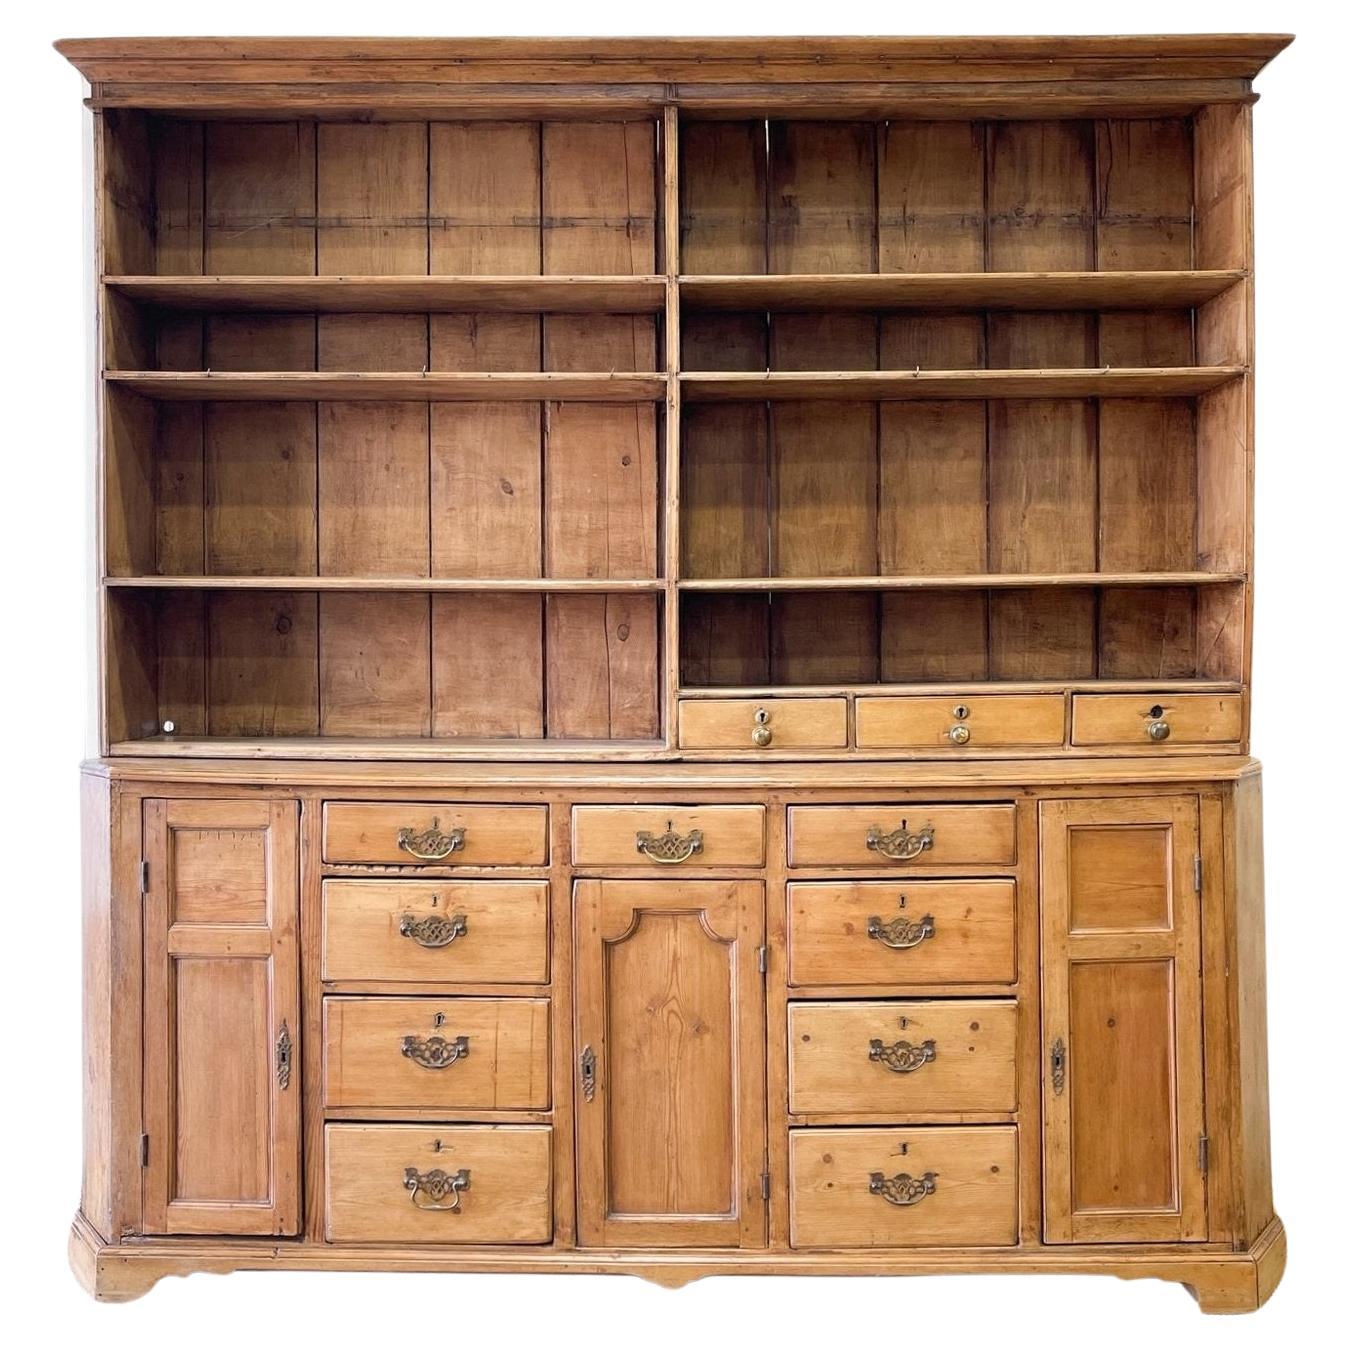 Una cómoda o armario galés de pino de principios del siglo XIX con esquinas achaflanadas